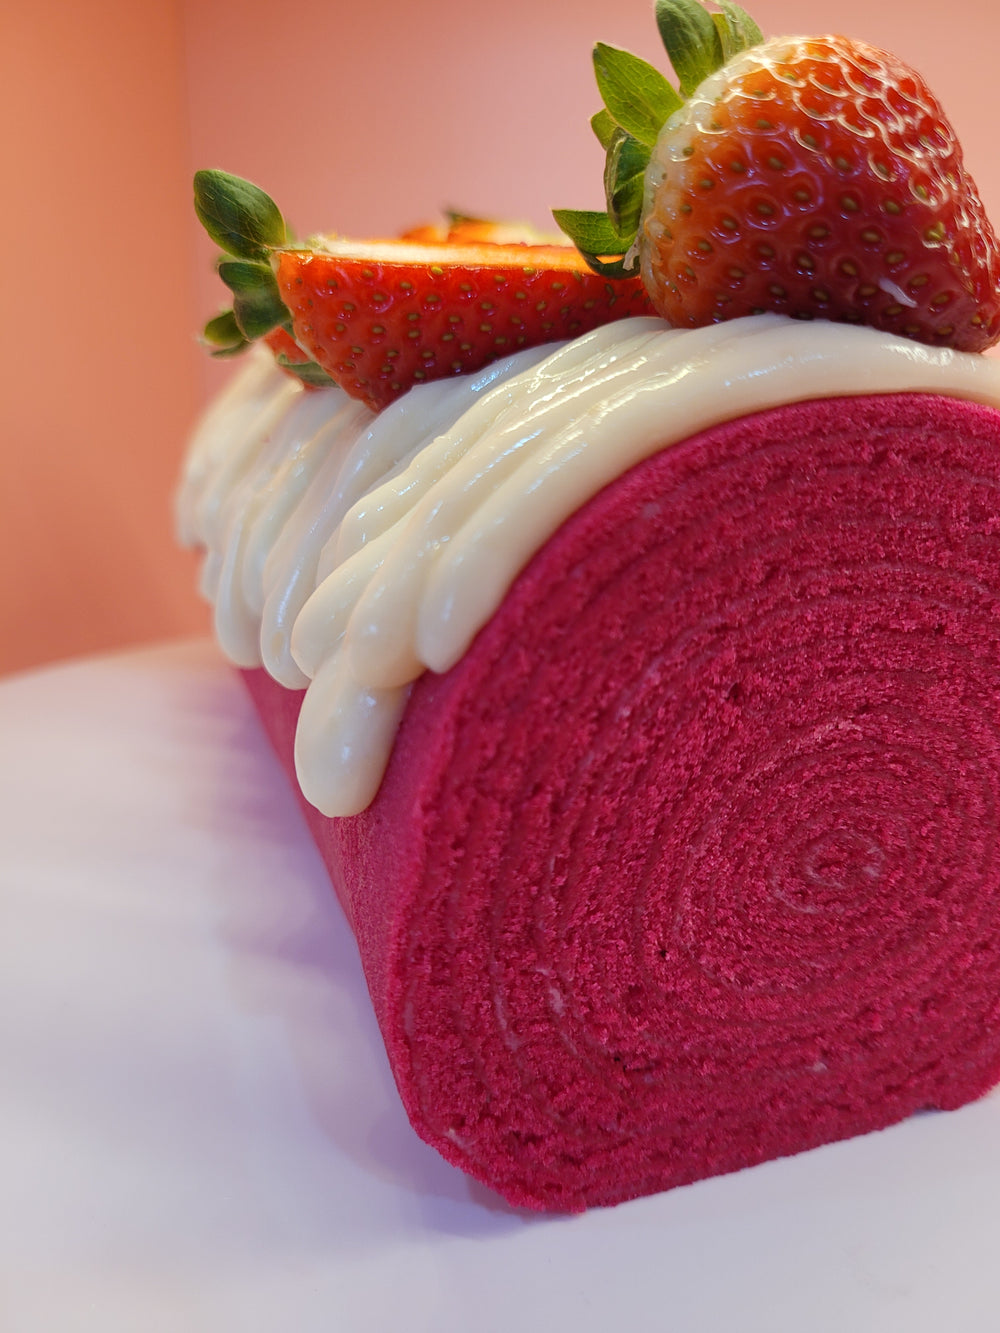 Red Velvet Roll Cake